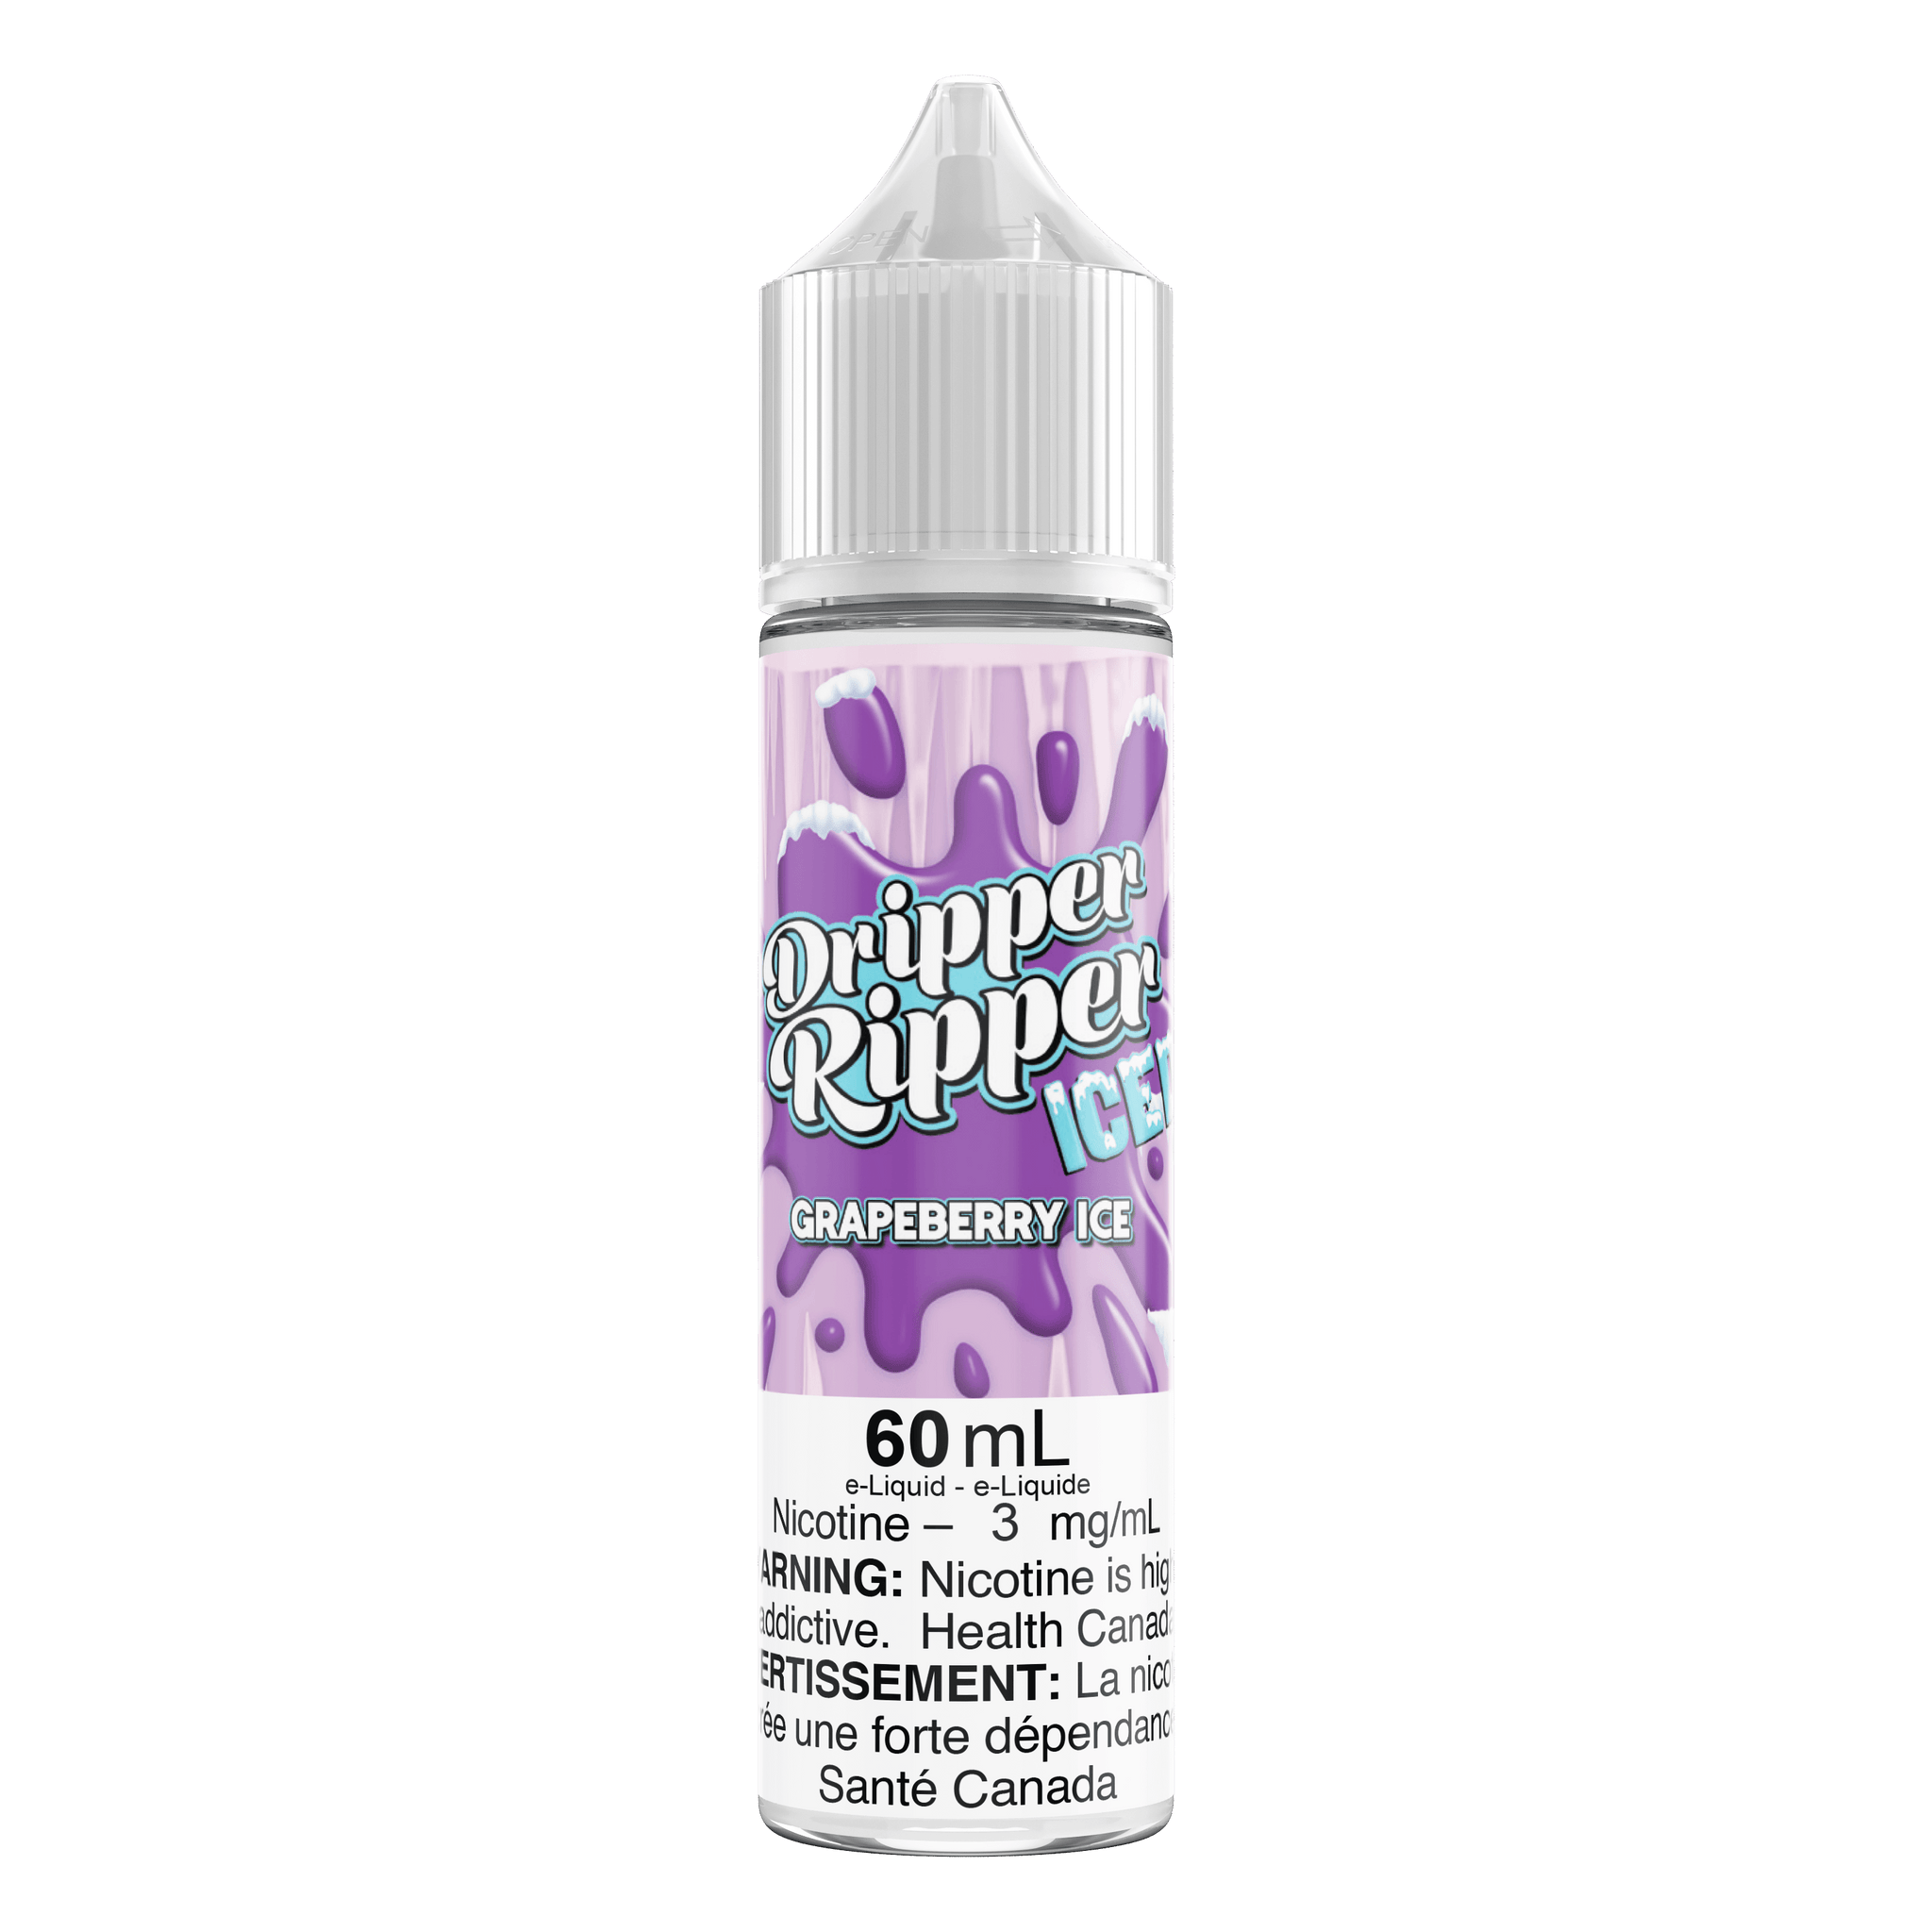 Dripper Ripper Grapeberry Iced - Vapor Shoppe